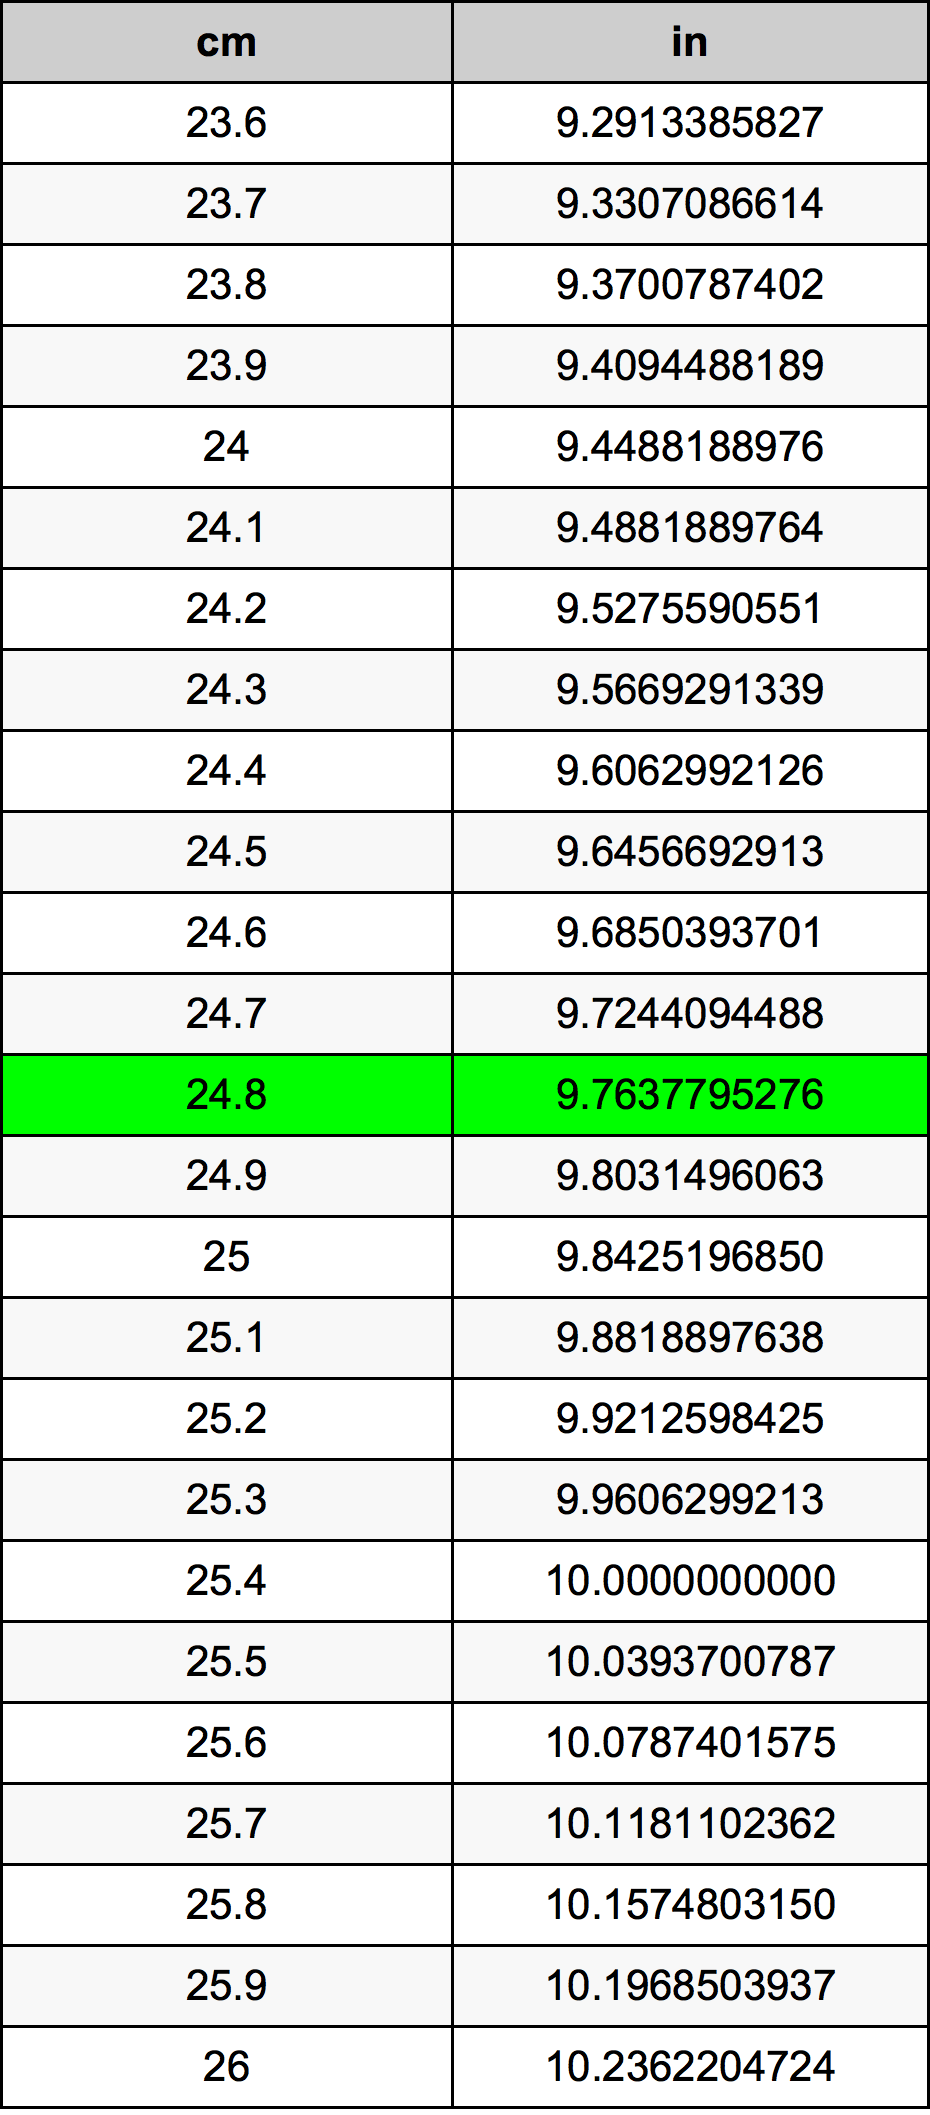 24.8 Centiméter átszámítási táblázat